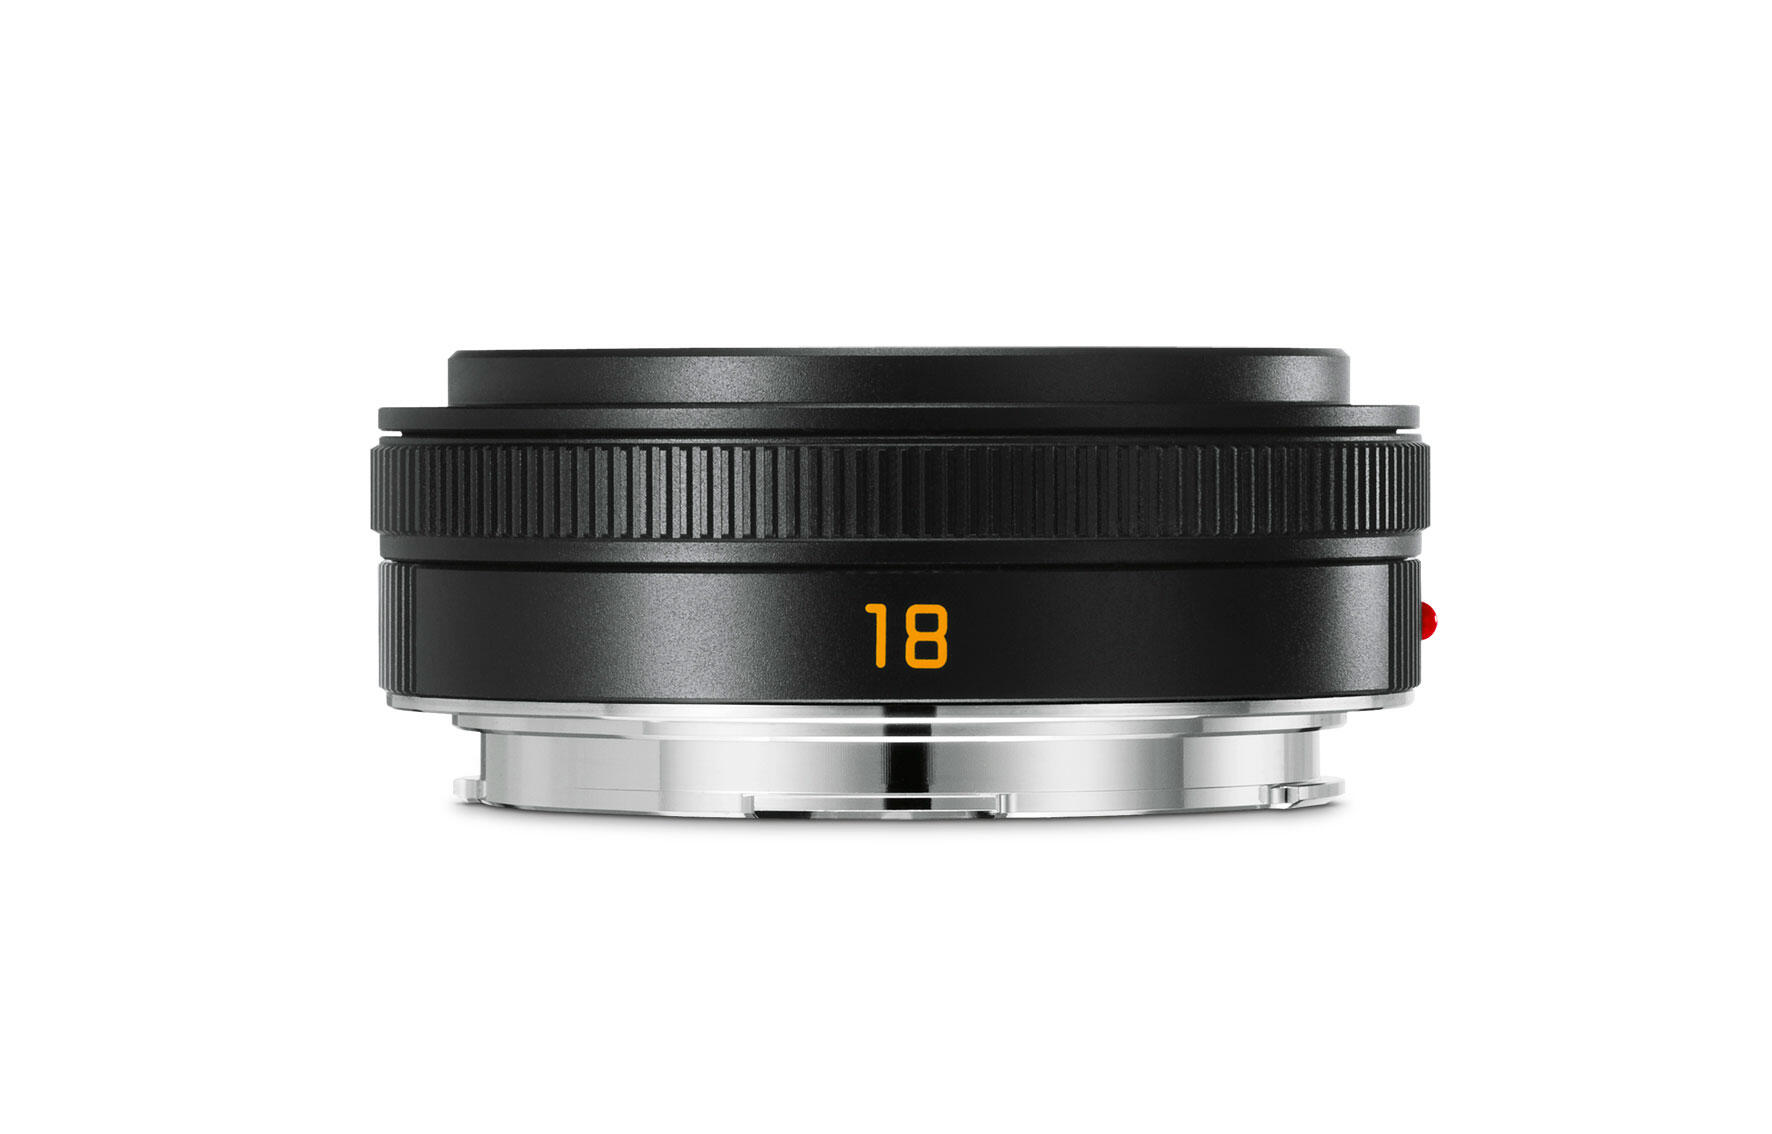 Leica ELMARIT-TL F2.8 18mm ASPH.ご検討をお願い致します